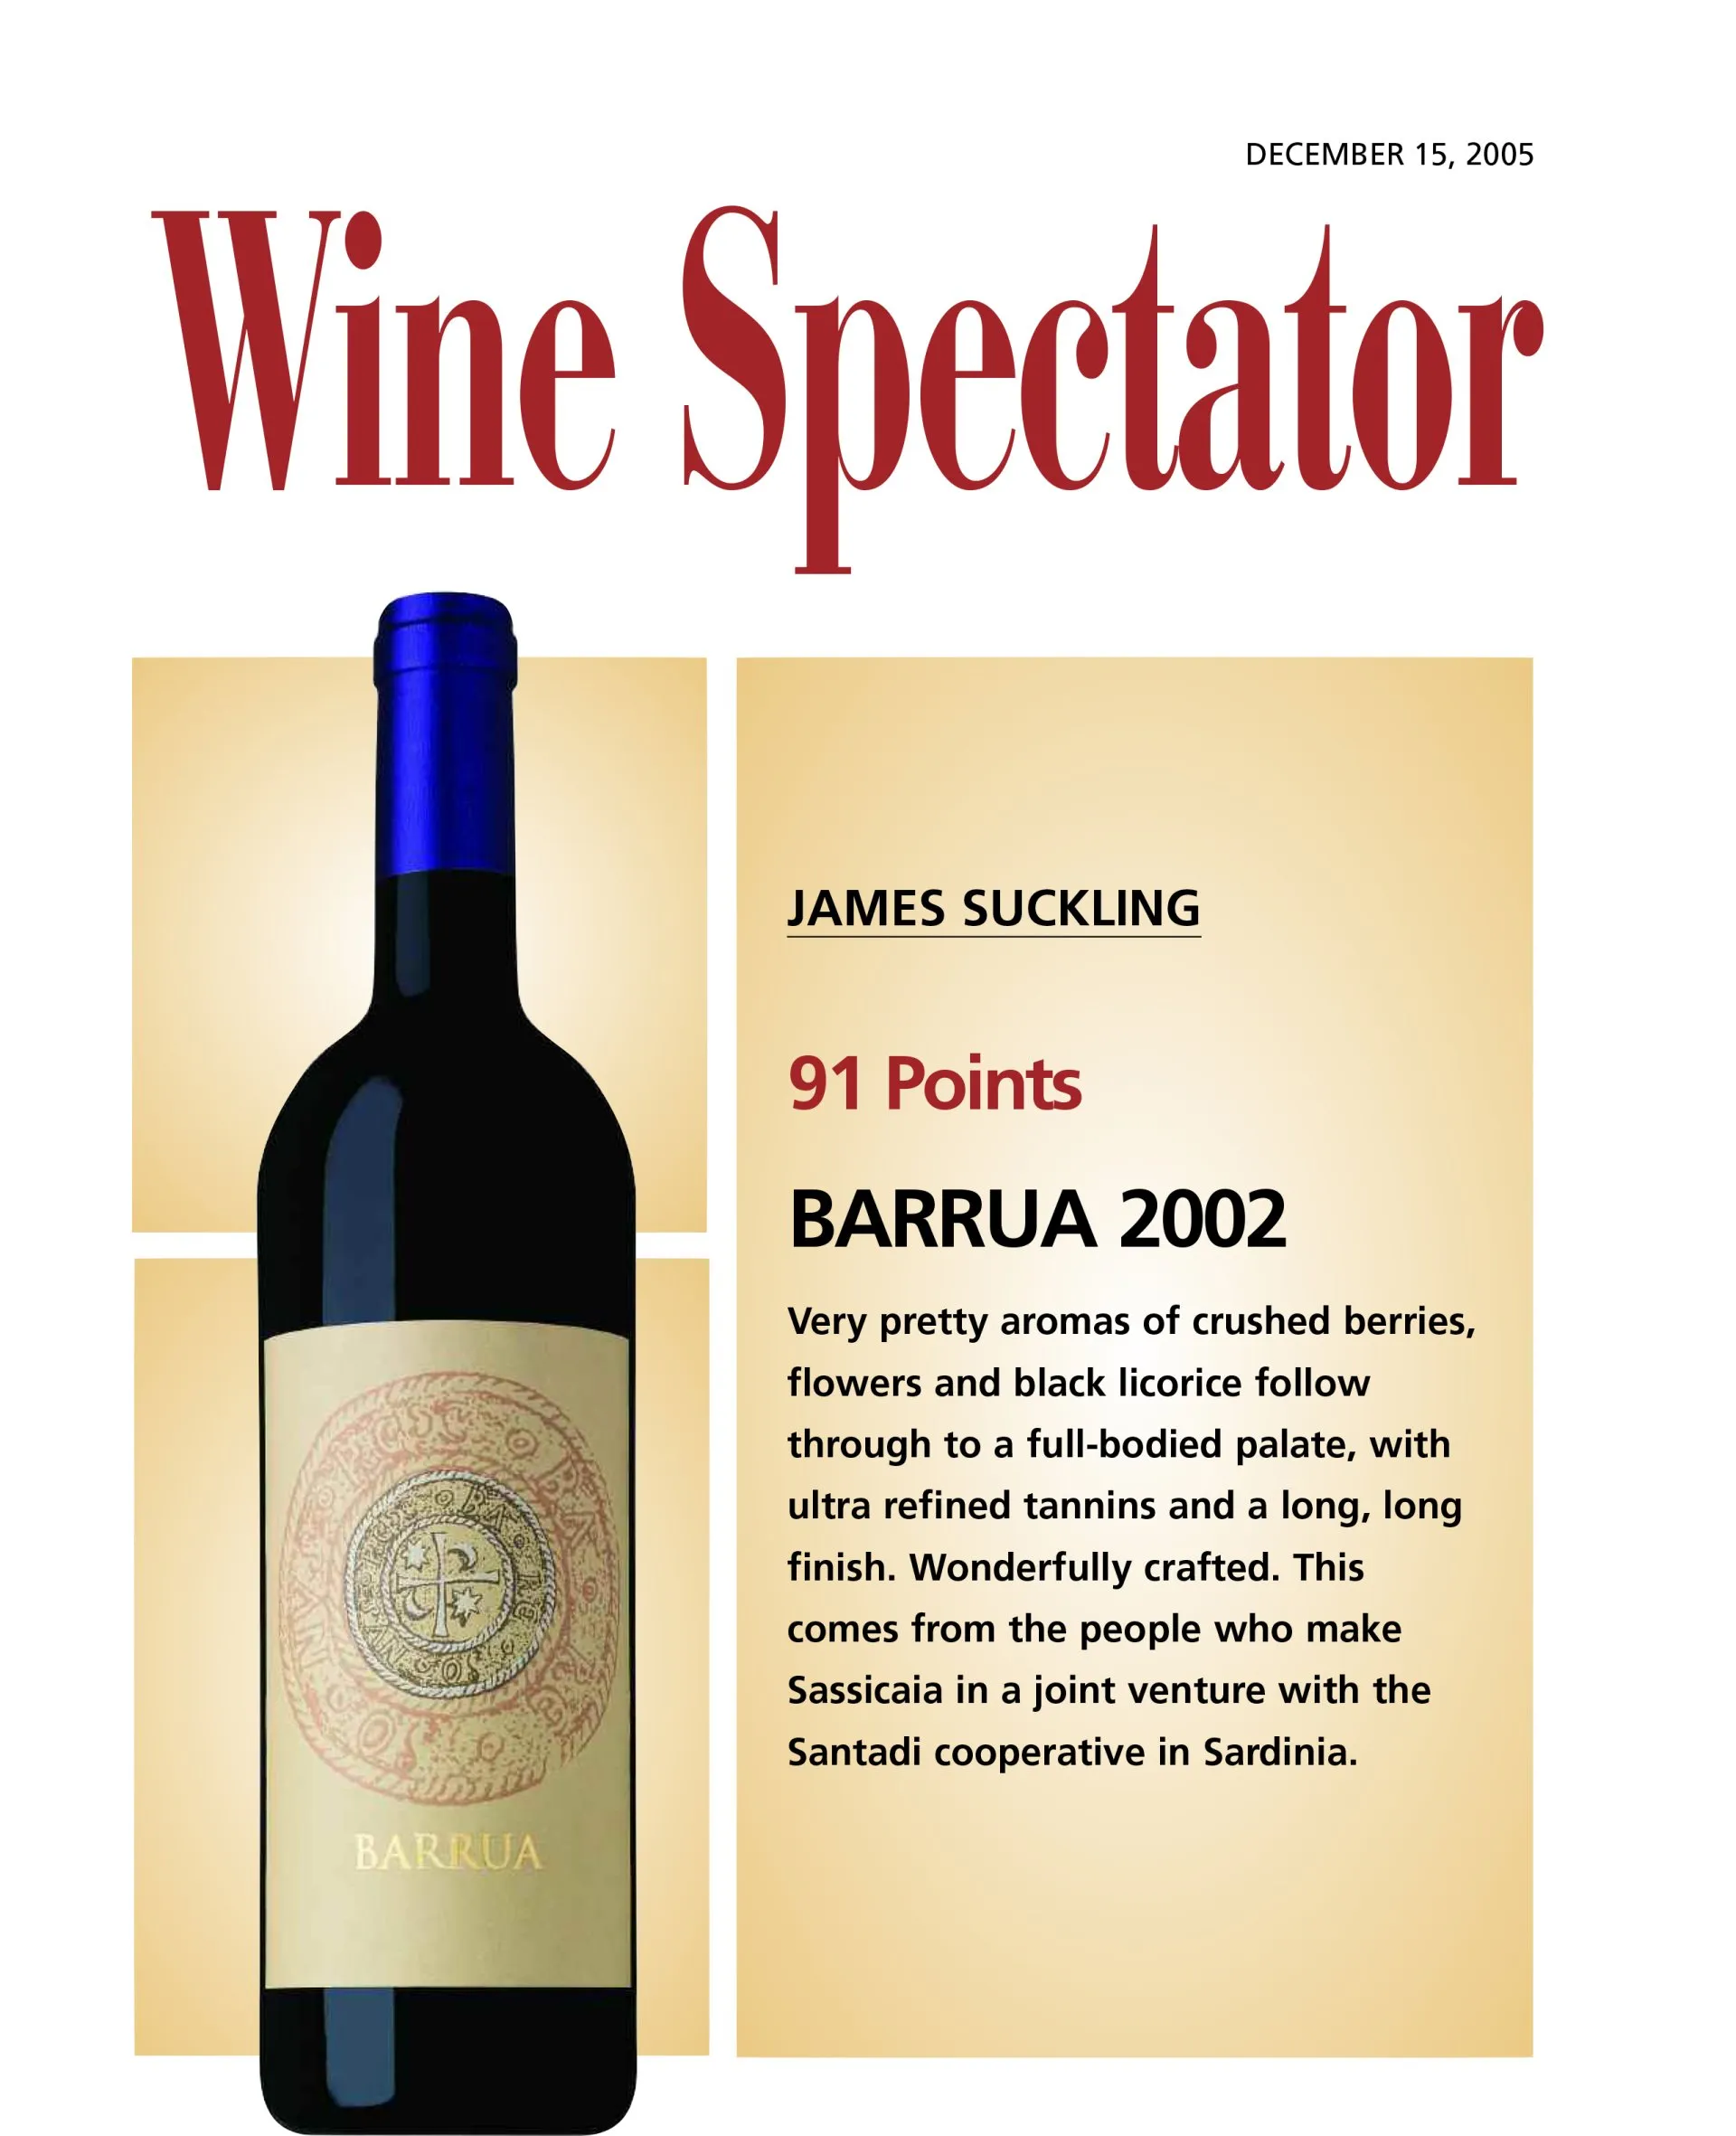 Wine spectator (Dec 2005) - Barrua 2002